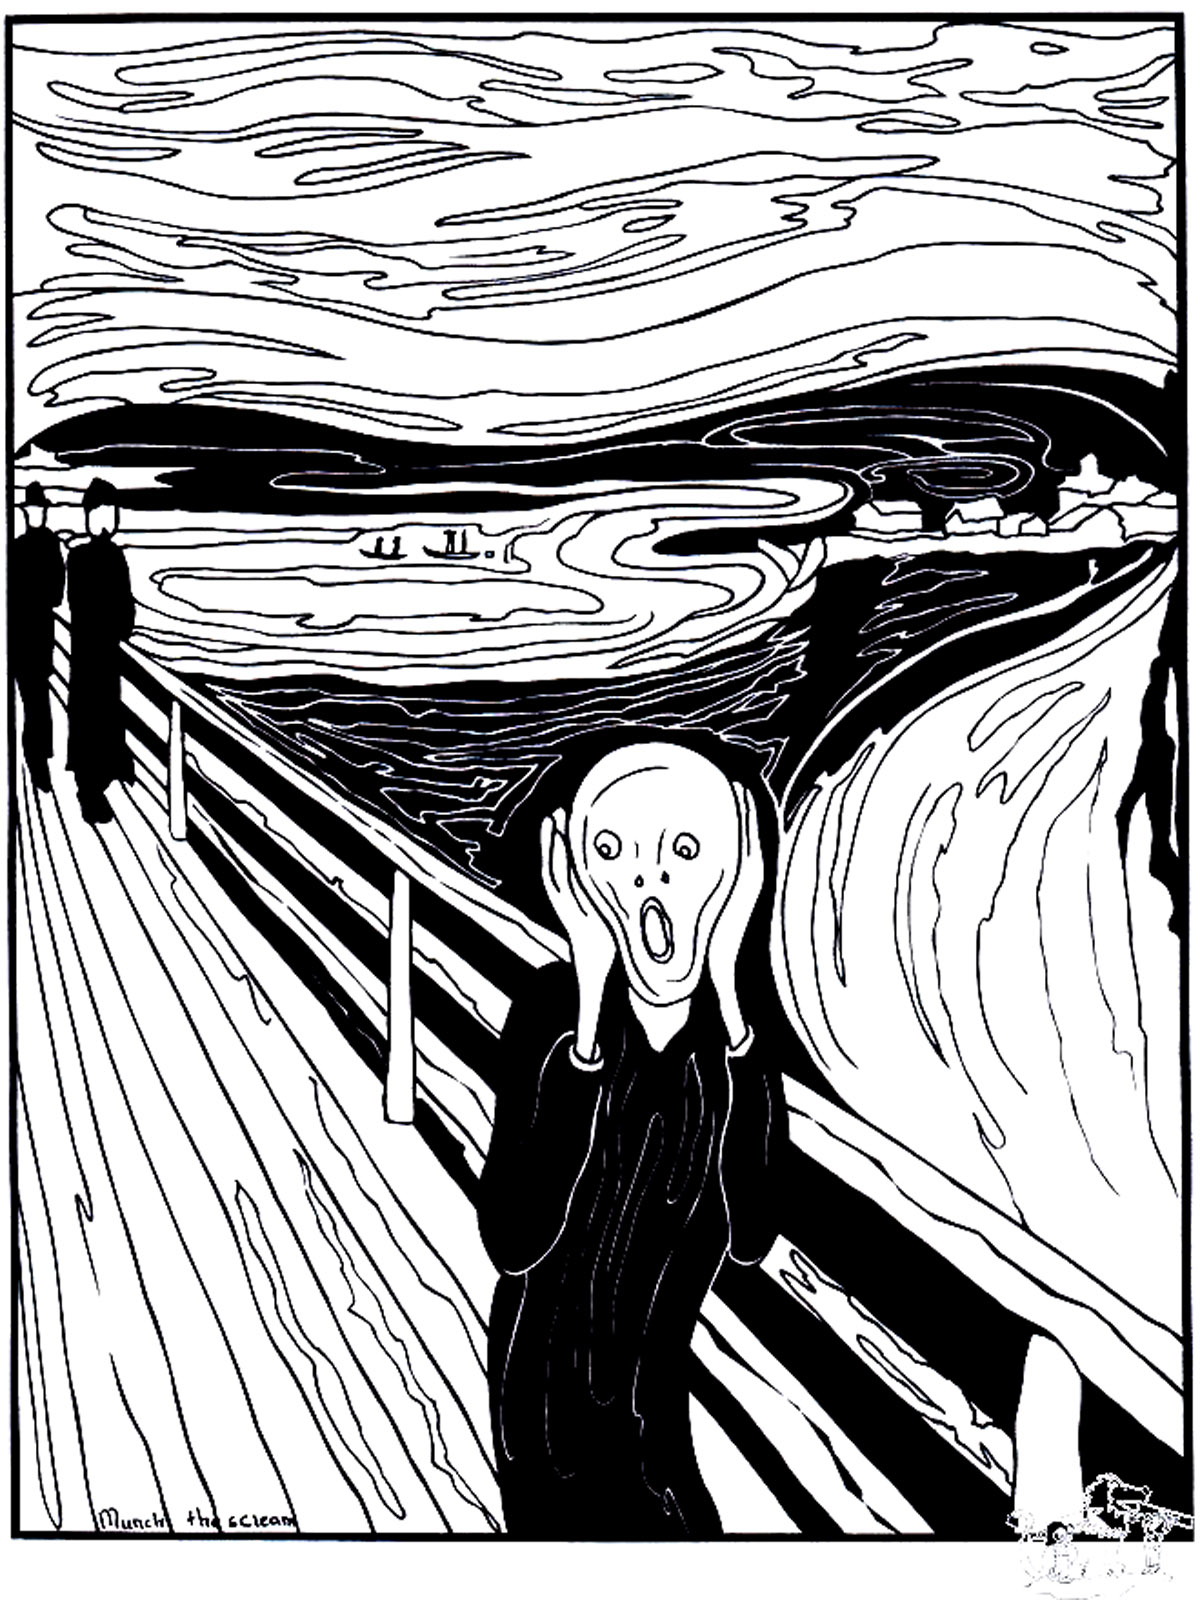 Colorazione basata sul dipinto 'L'urlo' (1893) di Edvard Munch'. L'Urlo' è un dipinto emblematico che rappresenta il senso di oppressione e di angoscia che a volte ci travolge.
